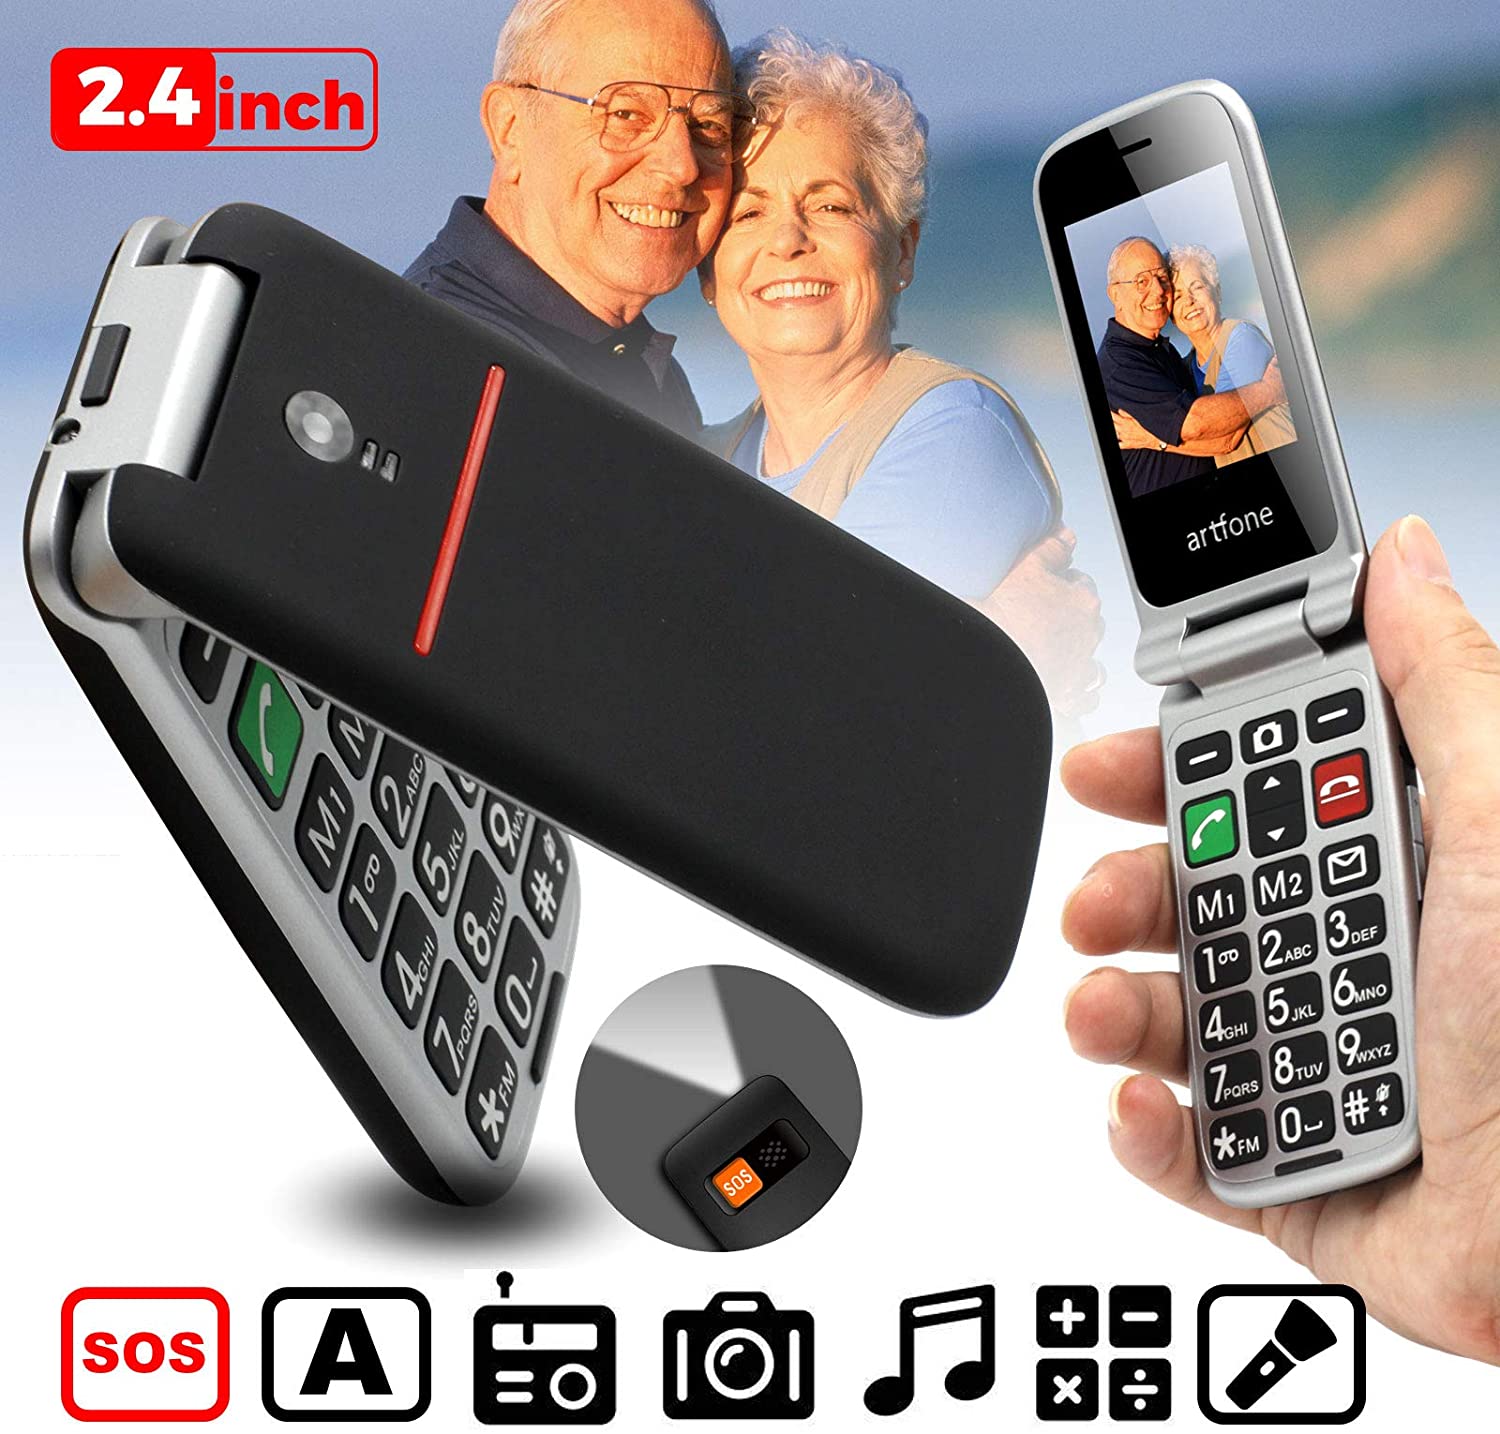 Teléfono Celular Senior,Artfone Flip Teléfono móviles para Personas Mayores  con Teclas Grandes con Pantalla a Color de 2.4 Pulgadas, Fácil de Usar para  Ancianos, con MMS, SOS Botón, Cámara,Unica SIM,3G Netcom completa 